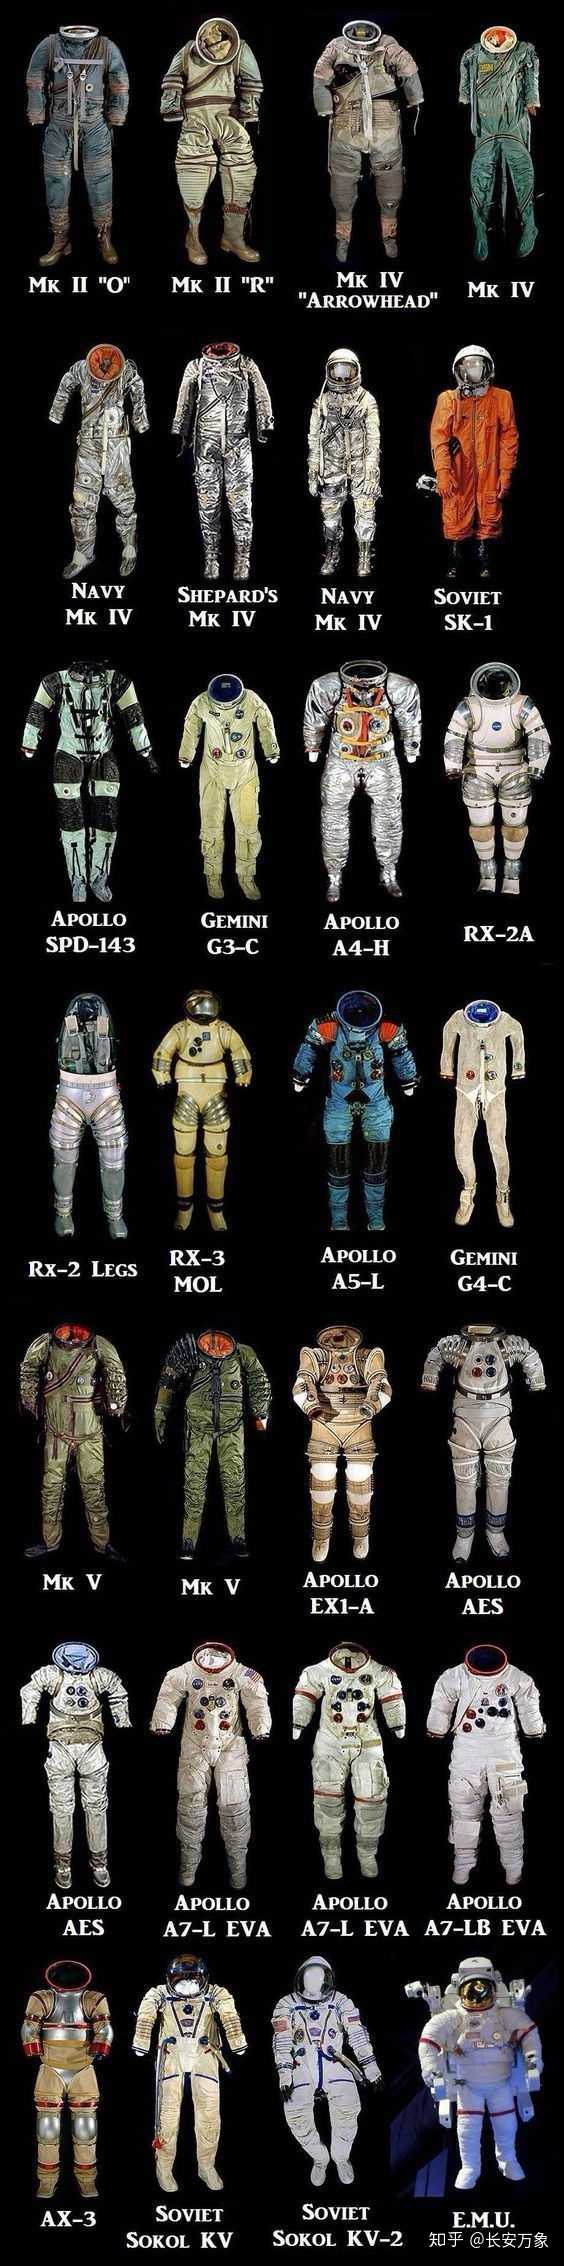 有谁了解太空探索技术公司(spacex)的宇航服?